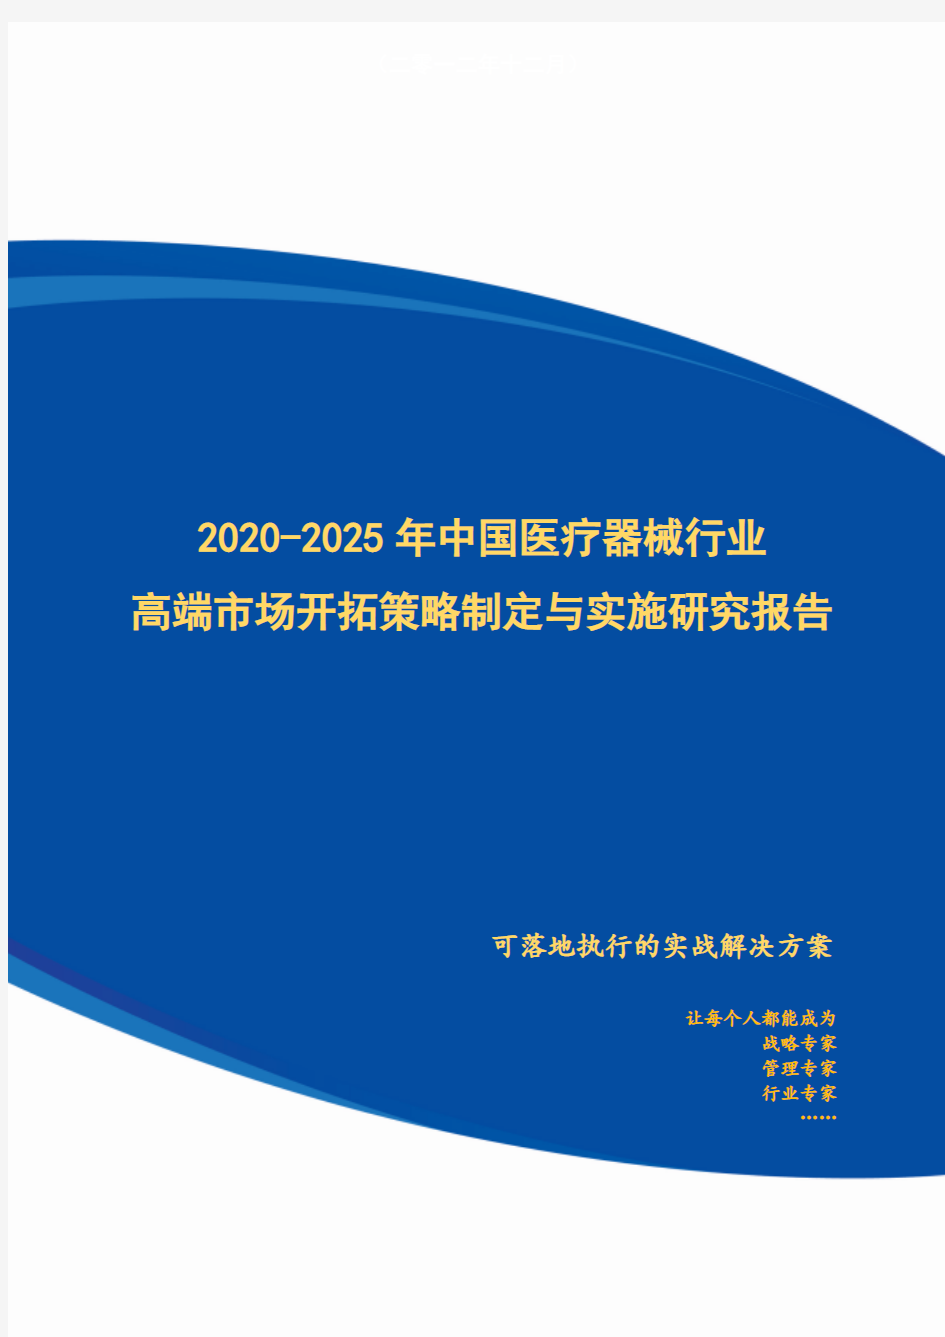 2020-2025年中国医疗器械行业高端市场开拓策略制定与实施研究报告